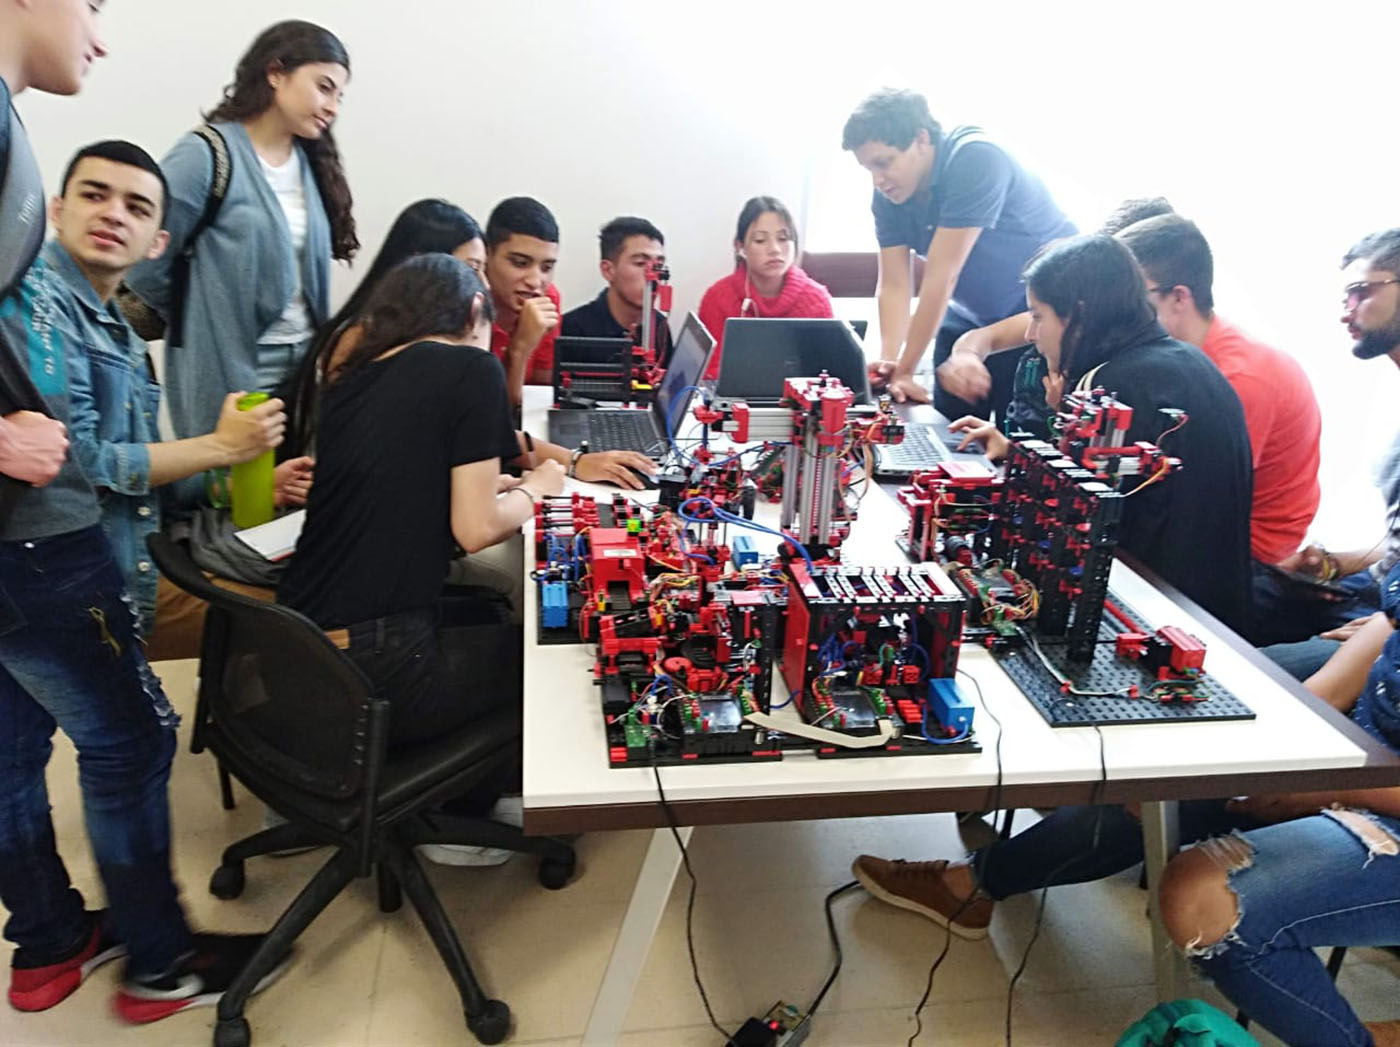 Actividades de laboratorio realizadas por los estudiantes de Ingeniería Industrial de la UNAL Sede Manizales. Fotos: Unimedios Manizales.